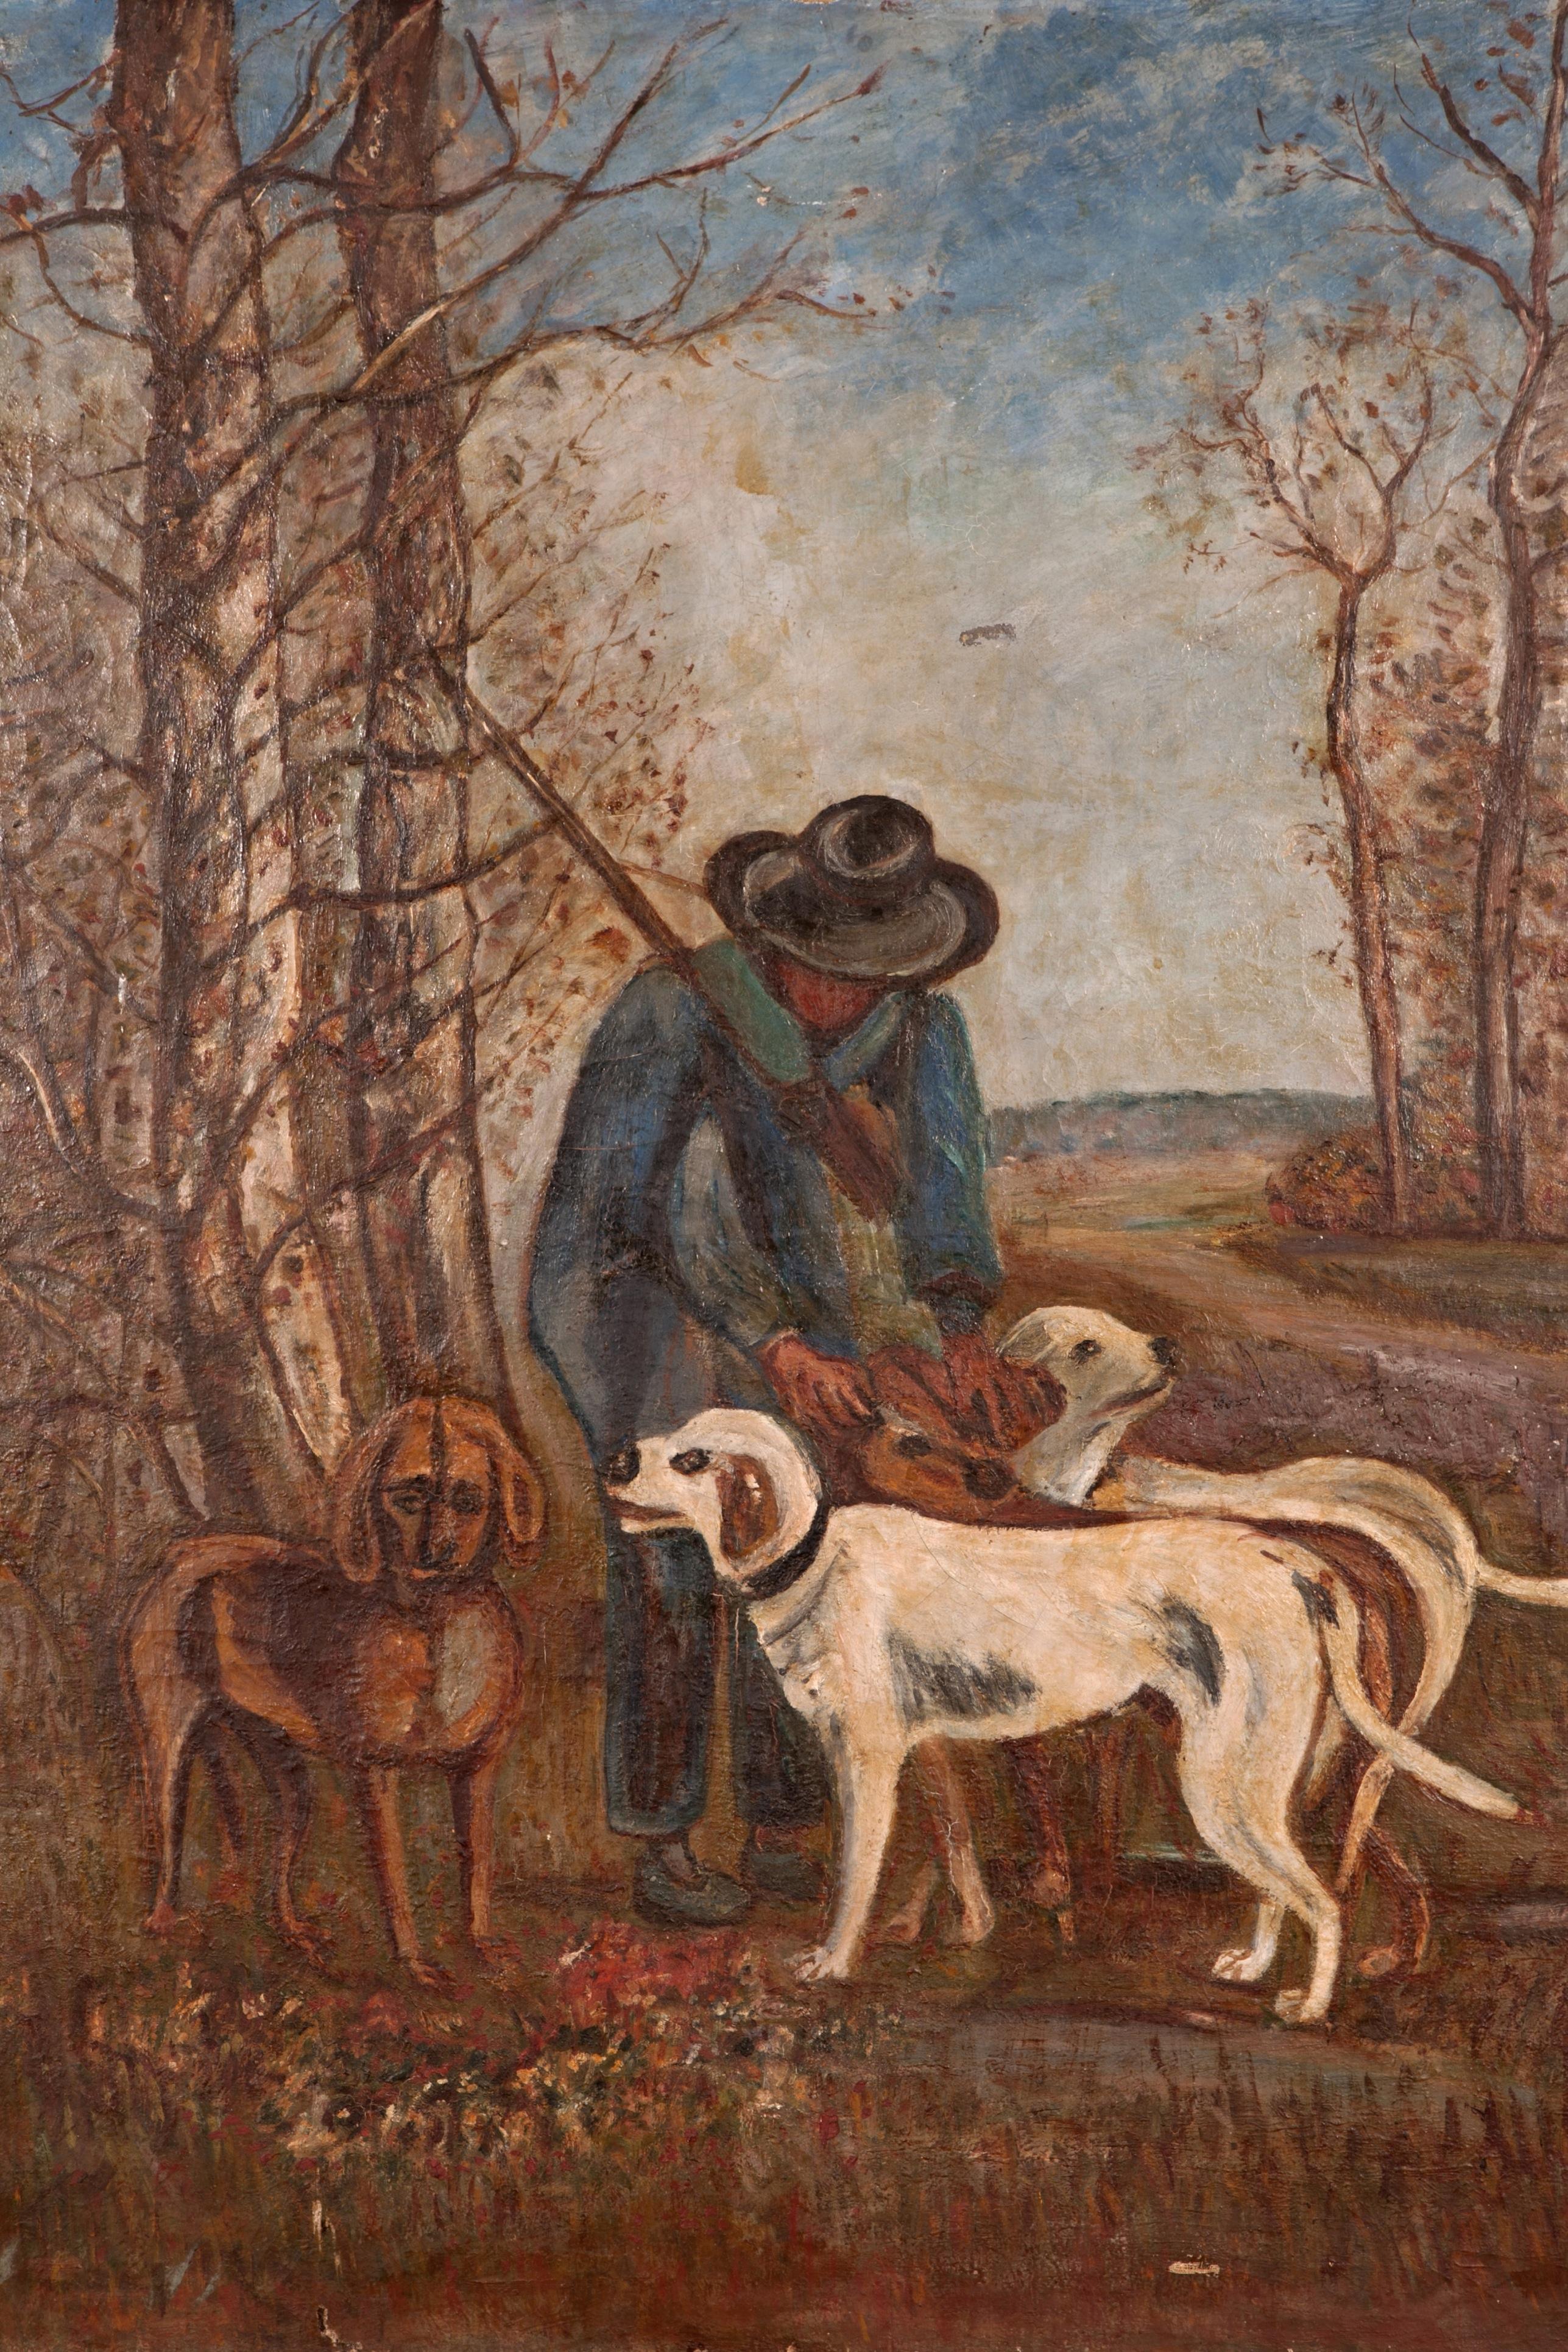 Il s'agit d'une grande et incroyable peinture française représentant un chasseur et ses quatre chiens un jour d'hiver. Trouvée dans le sud de la France, cette pièce est une extraordinaire antiquité du début du 20e siècle. L'artiste a choisi